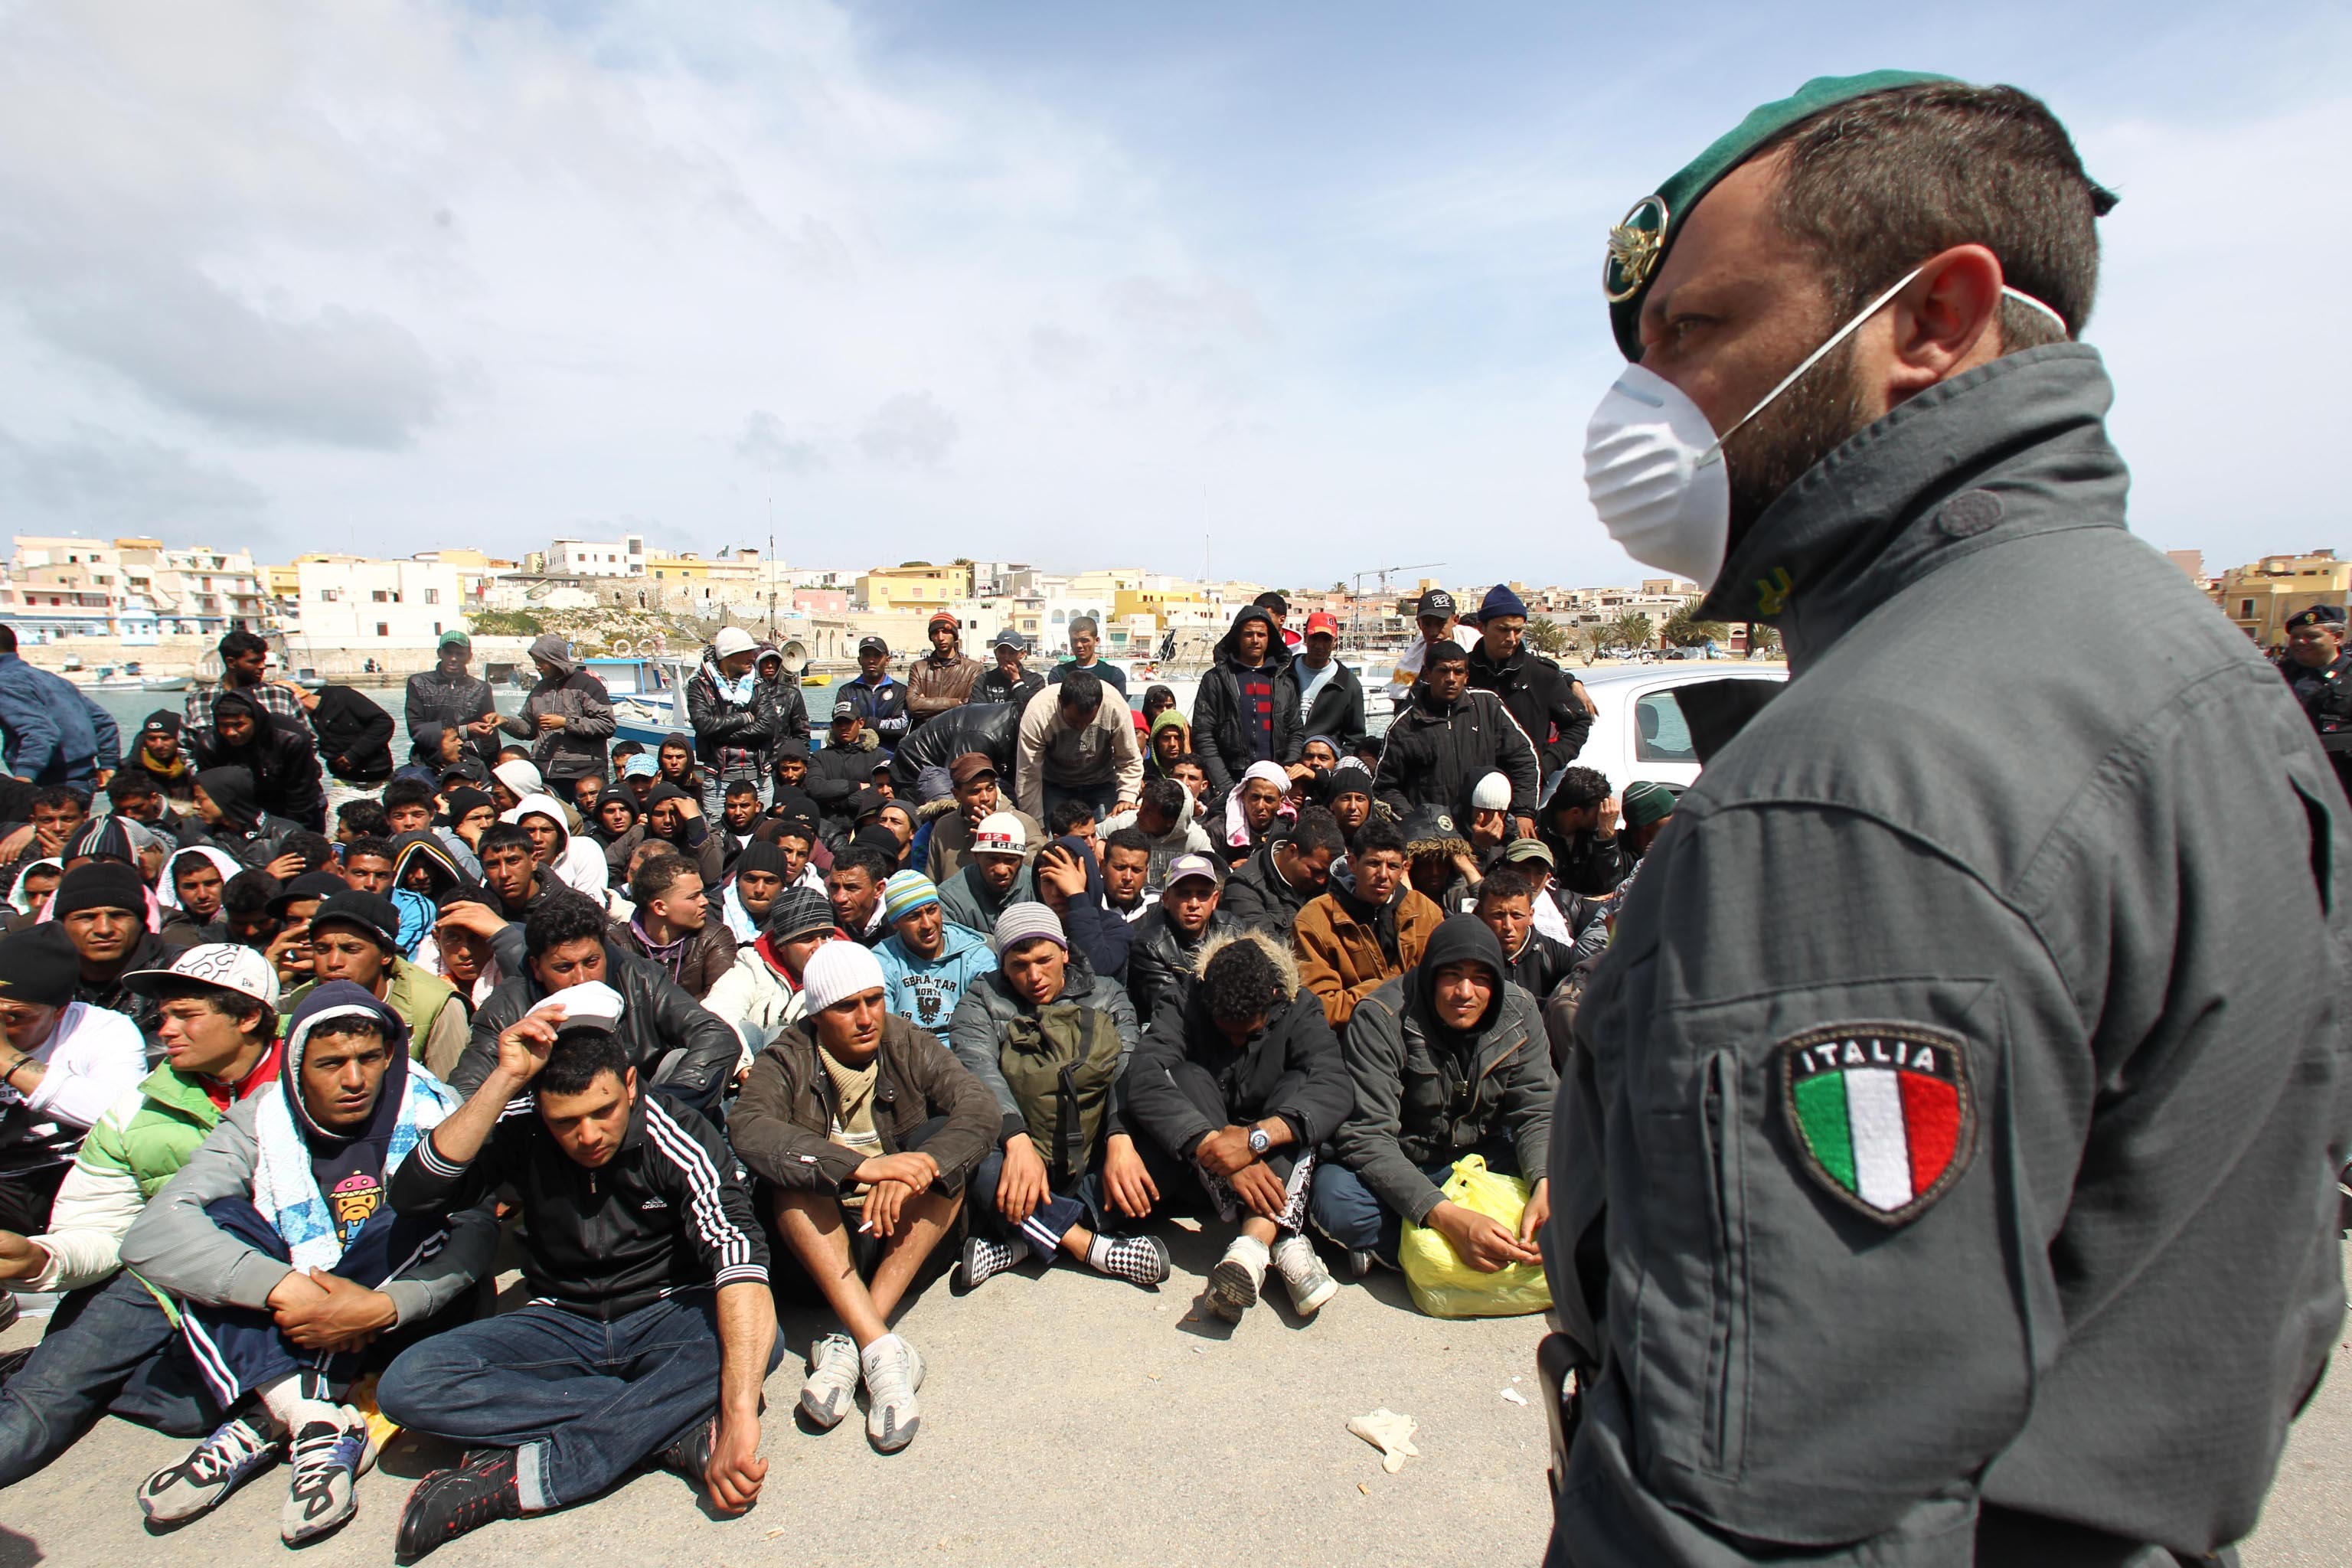 Gruppi di migrati riuniti per l'identificazione dalle forze dell'ordine a Lampedusa, oggi 29 marzo 2011. Nell'isola i migranti presenti sono 6.200, il dato e' fornito dall'ufficio della Regione siciliana. ANSA / FILIPPO VENEZIA